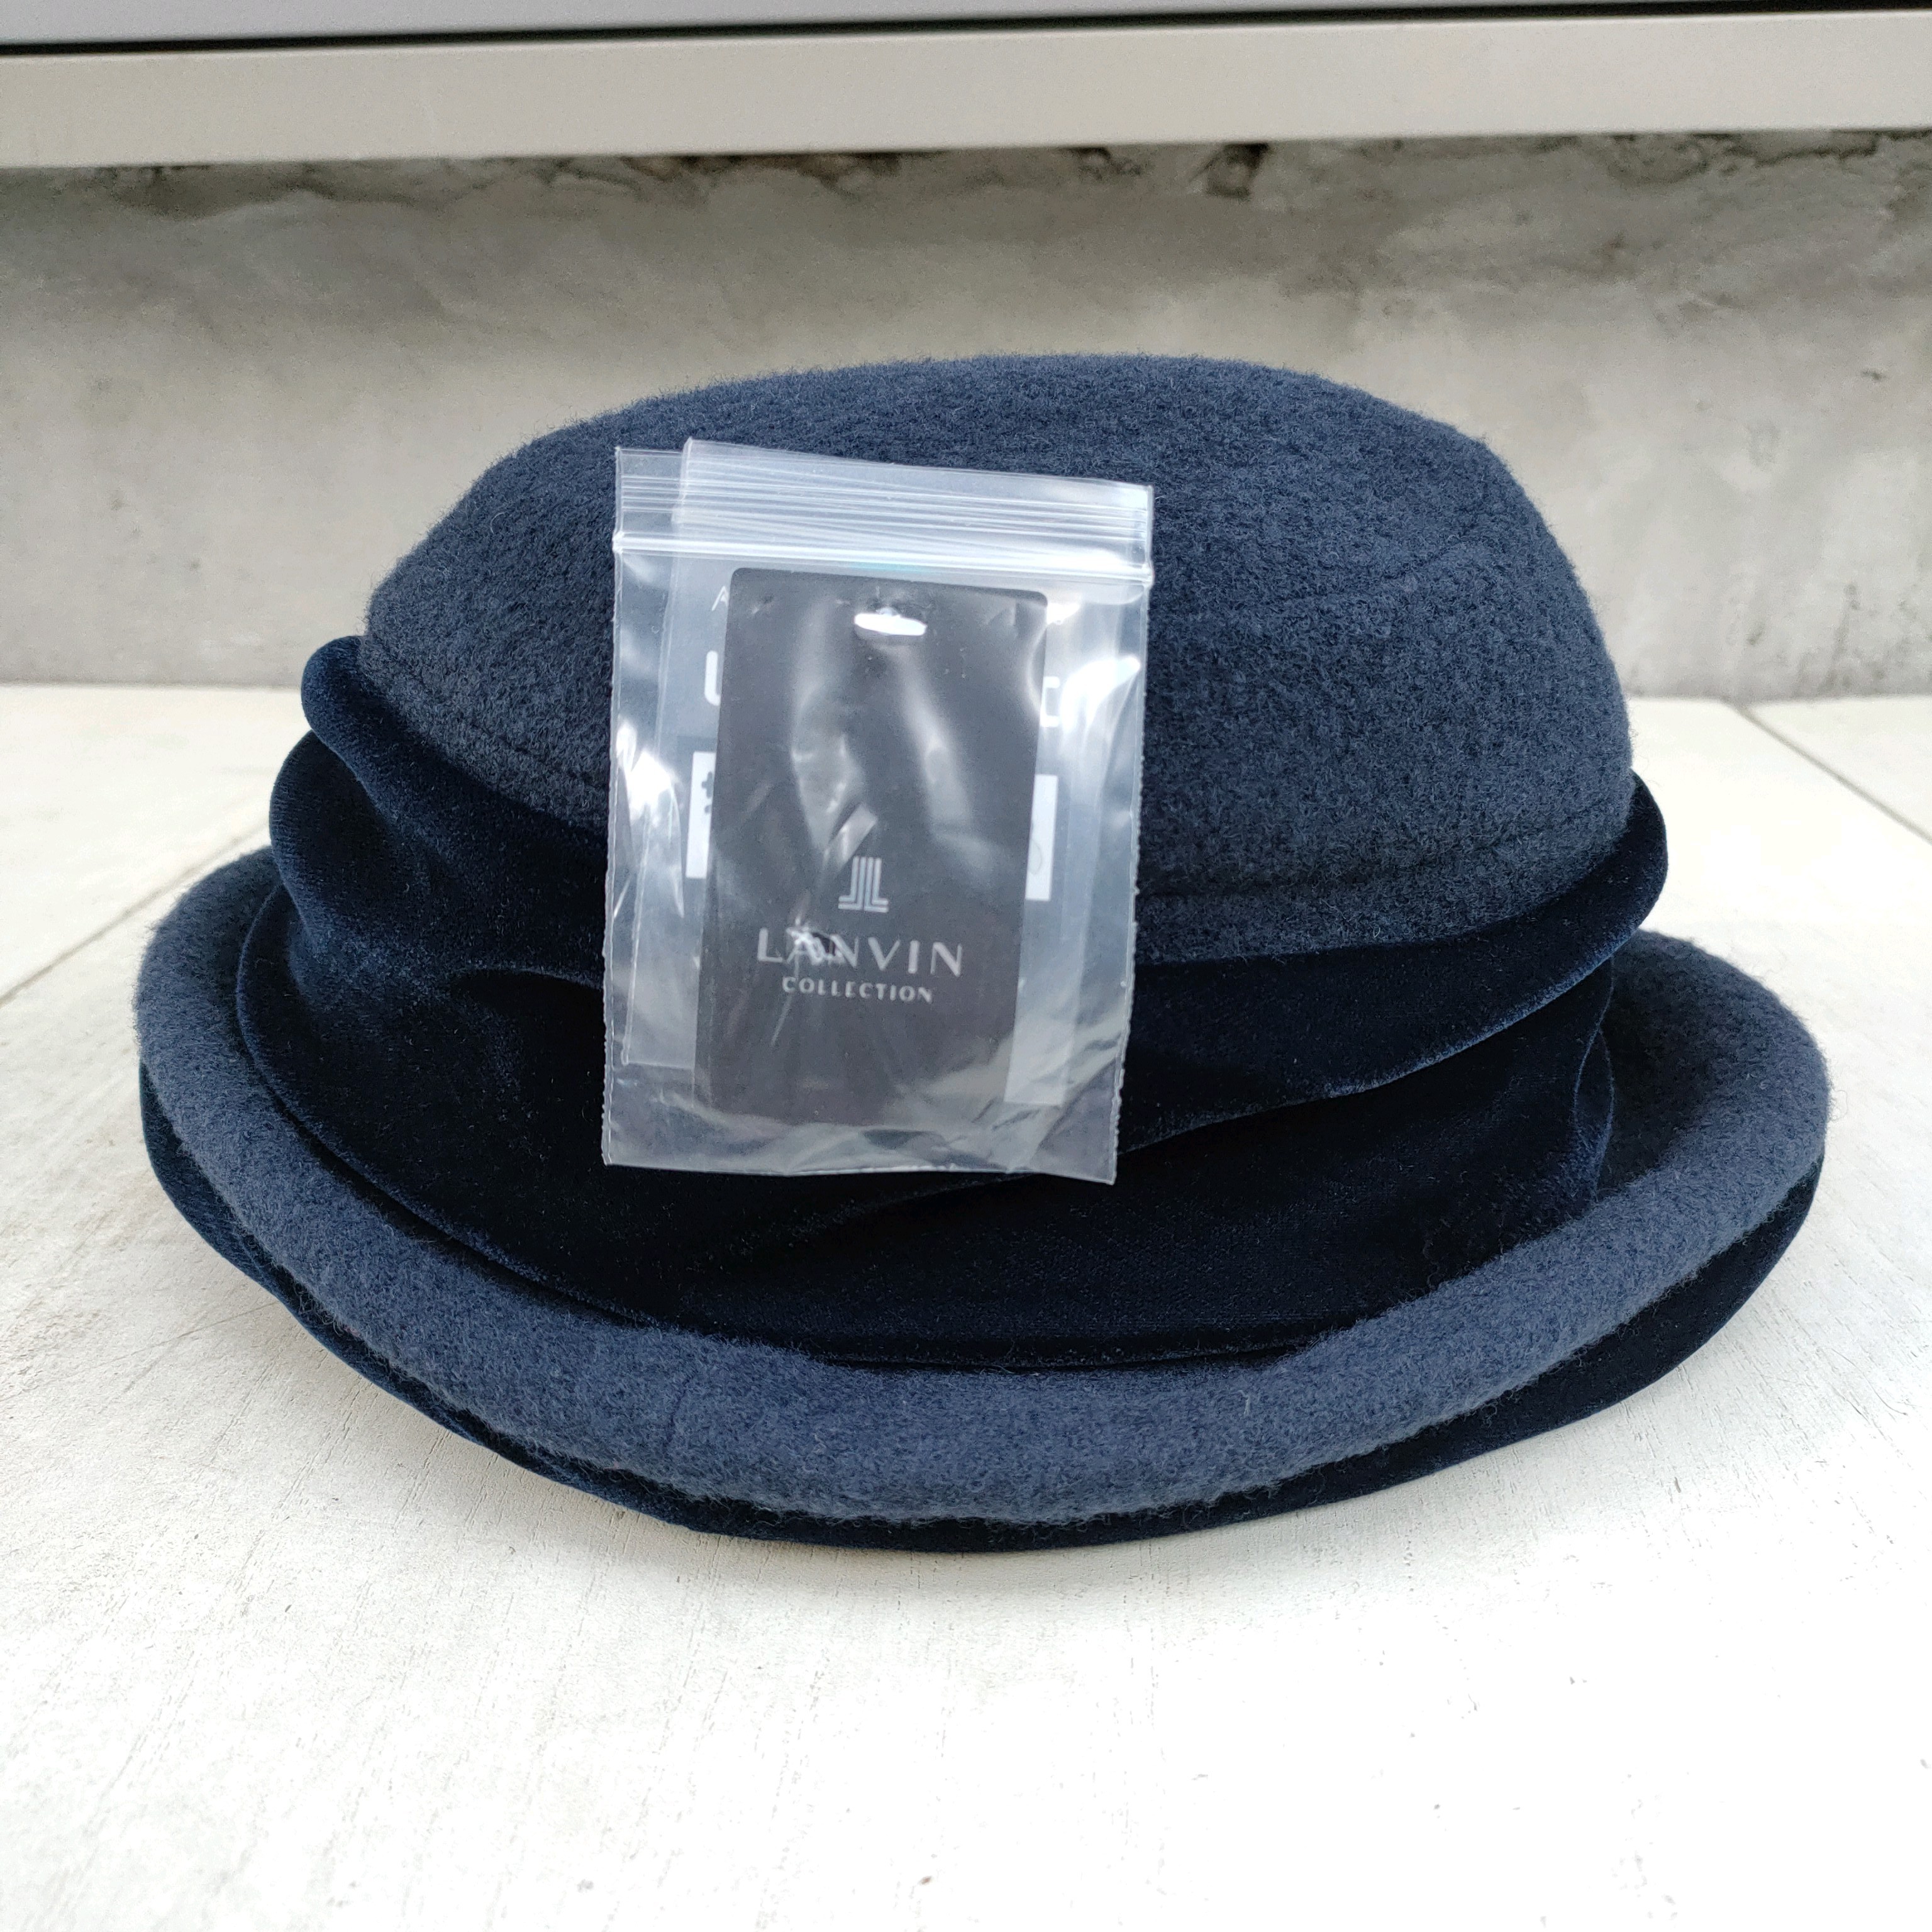 LANVIN ランバンの帽子 ハット アルベール 新品 箱付き 58サイズ